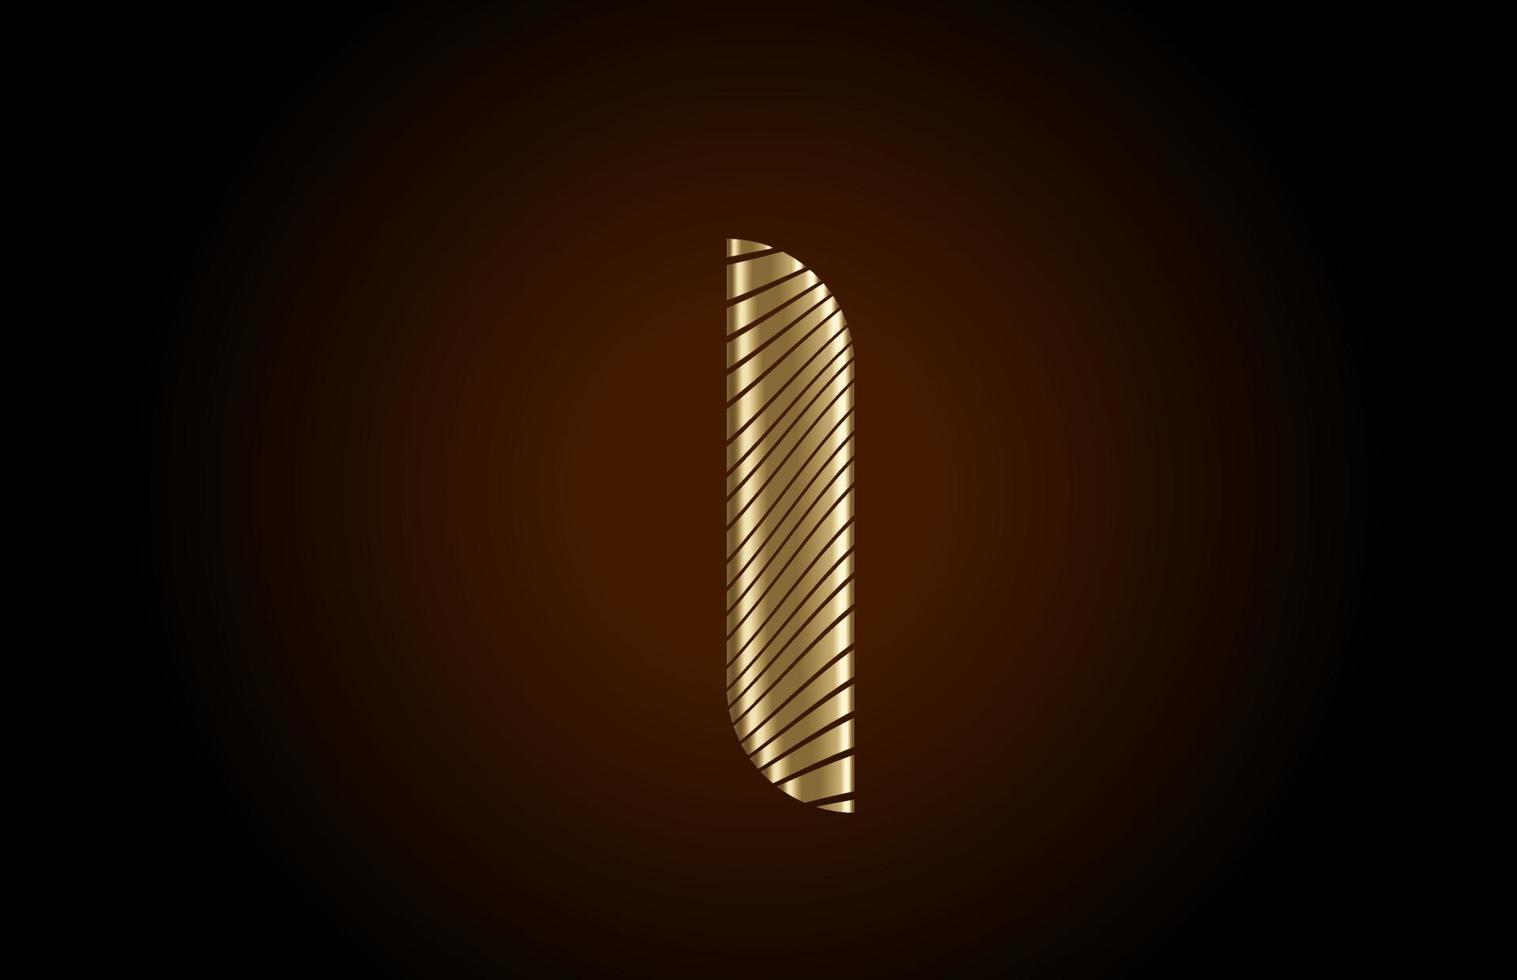 ik gele alfabet letterpictogram logo voor bedrijf. metallic gouden lijnontwerp voor luxe identiteit vector